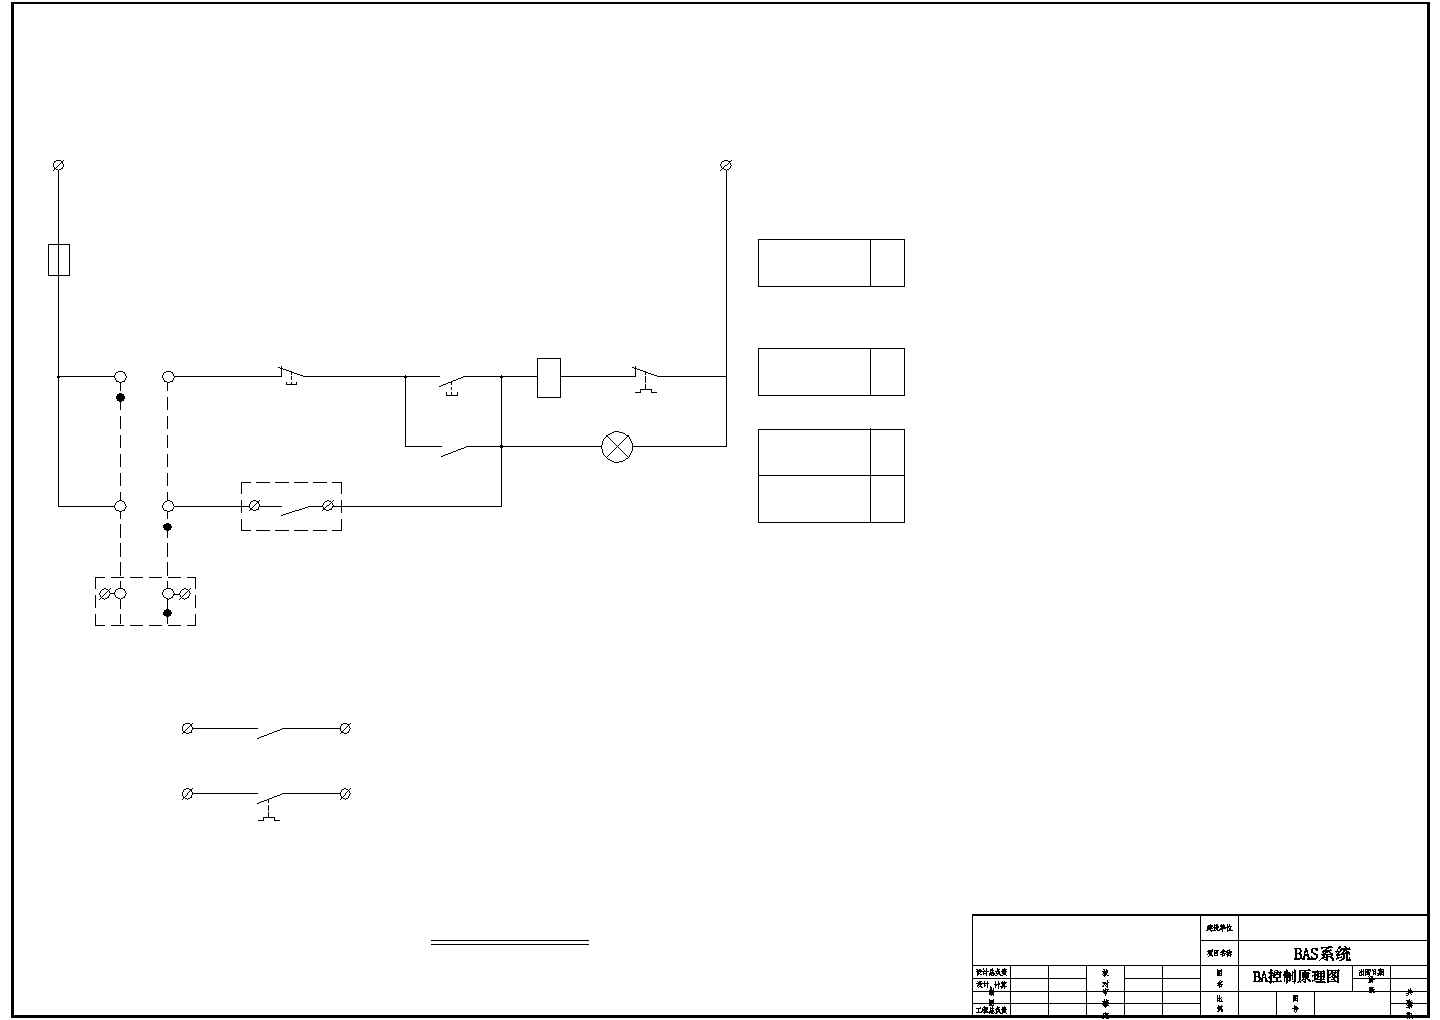 某博物馆CAD电气施工图-BA设备控制箱原理图